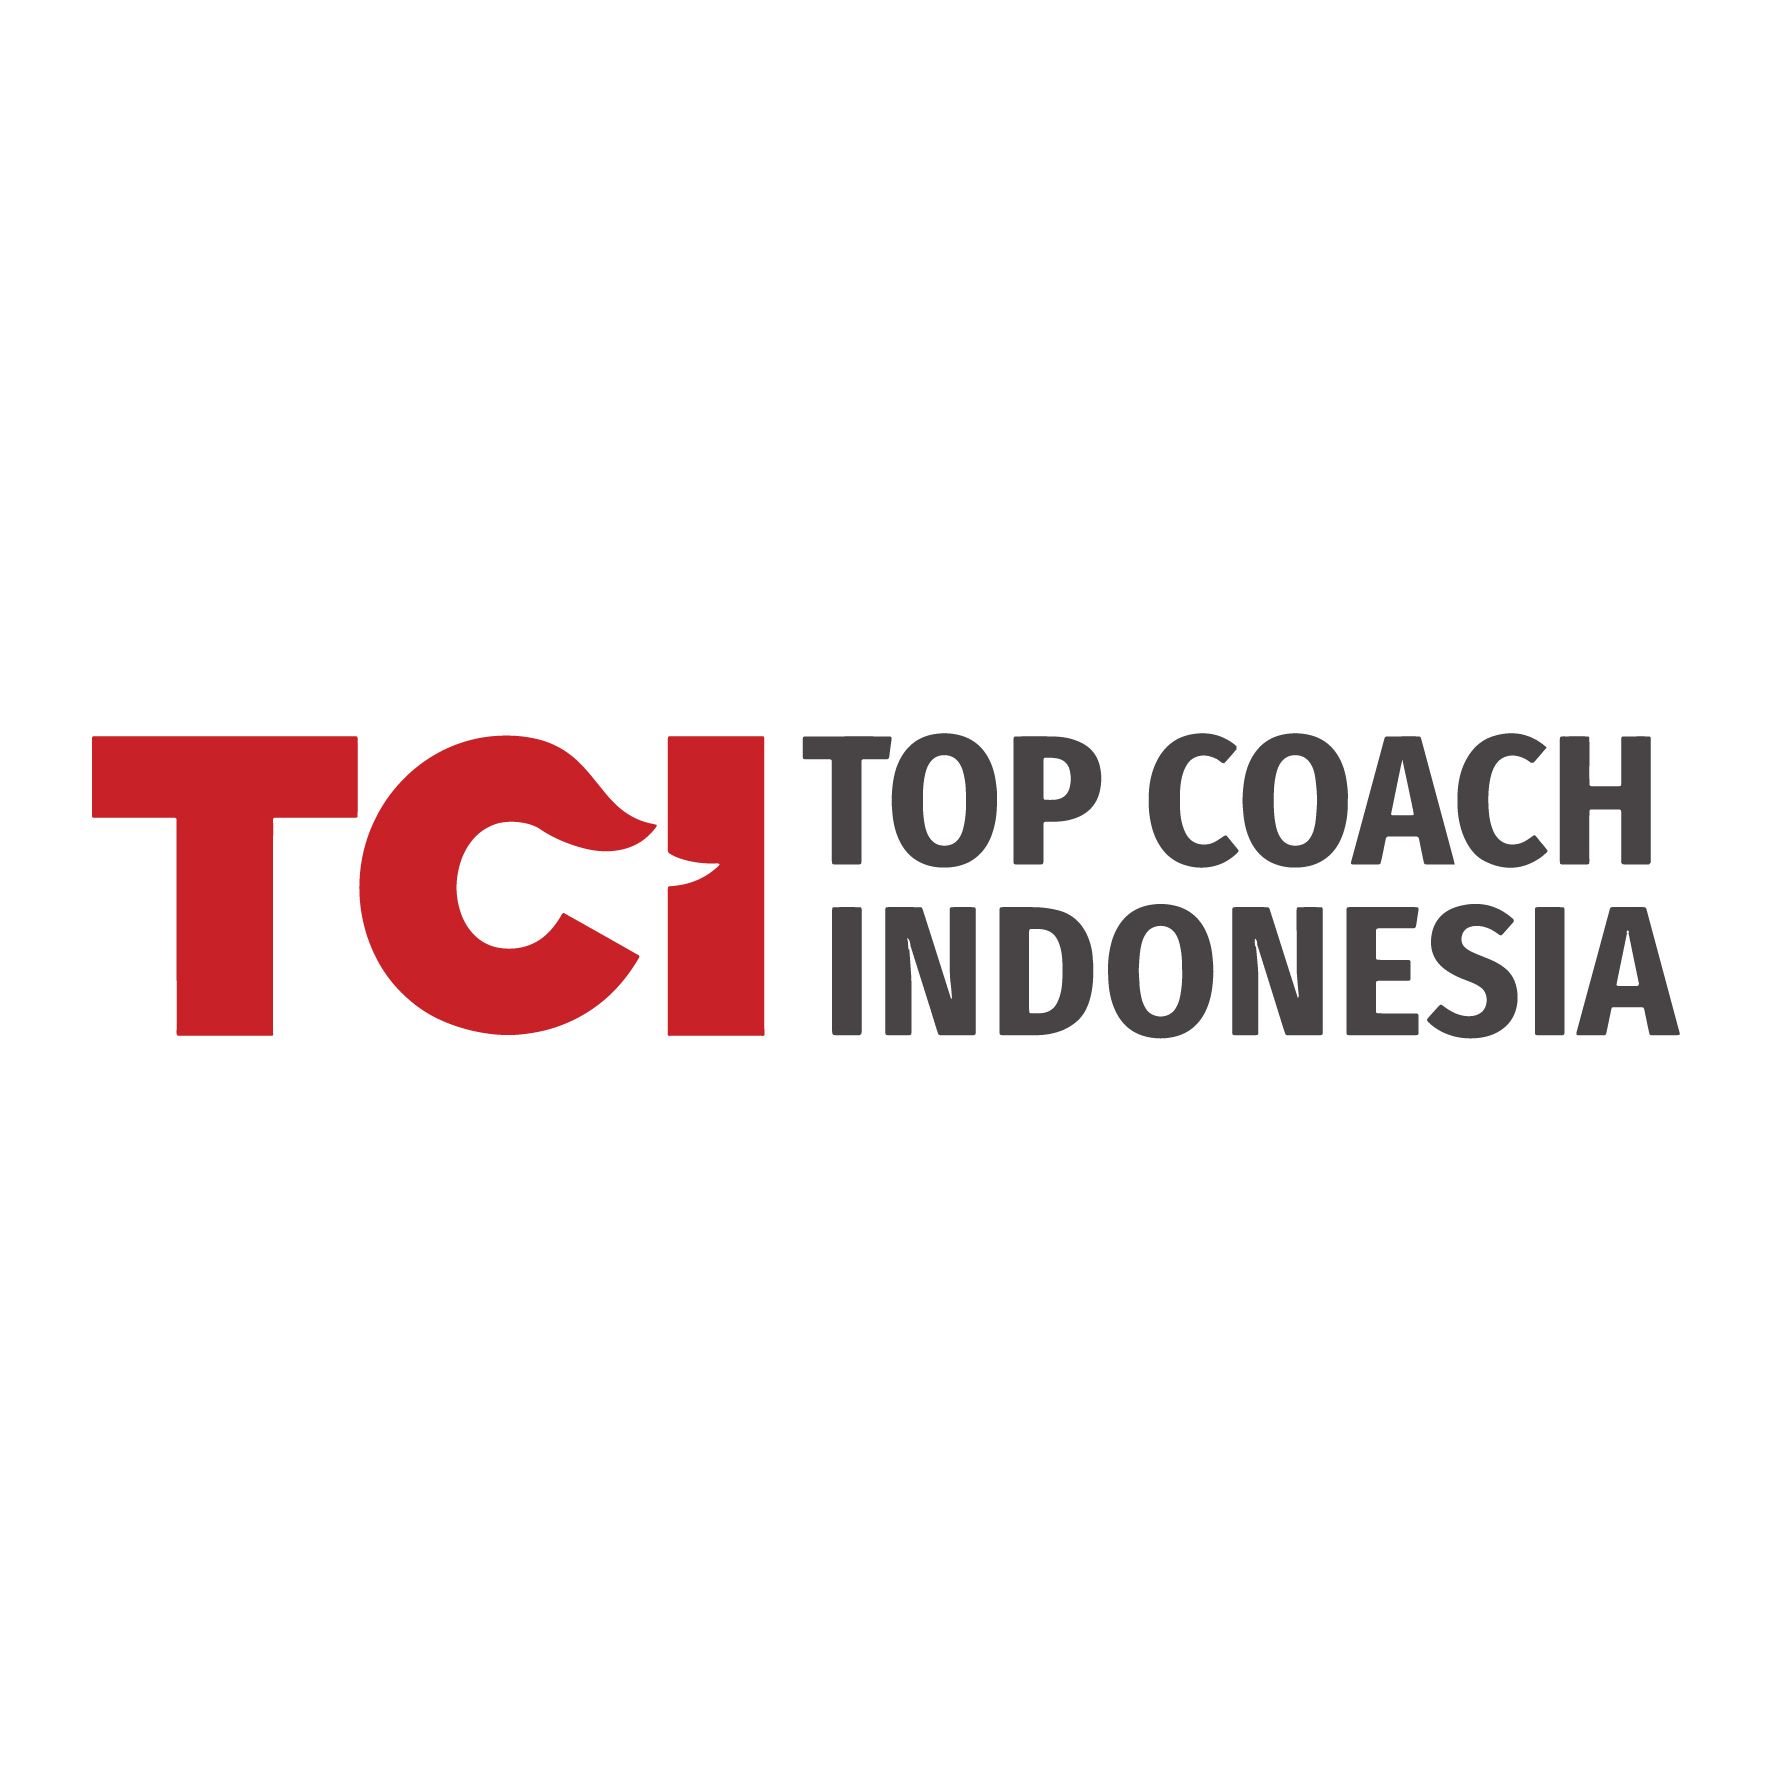 Top Coach Indonesia